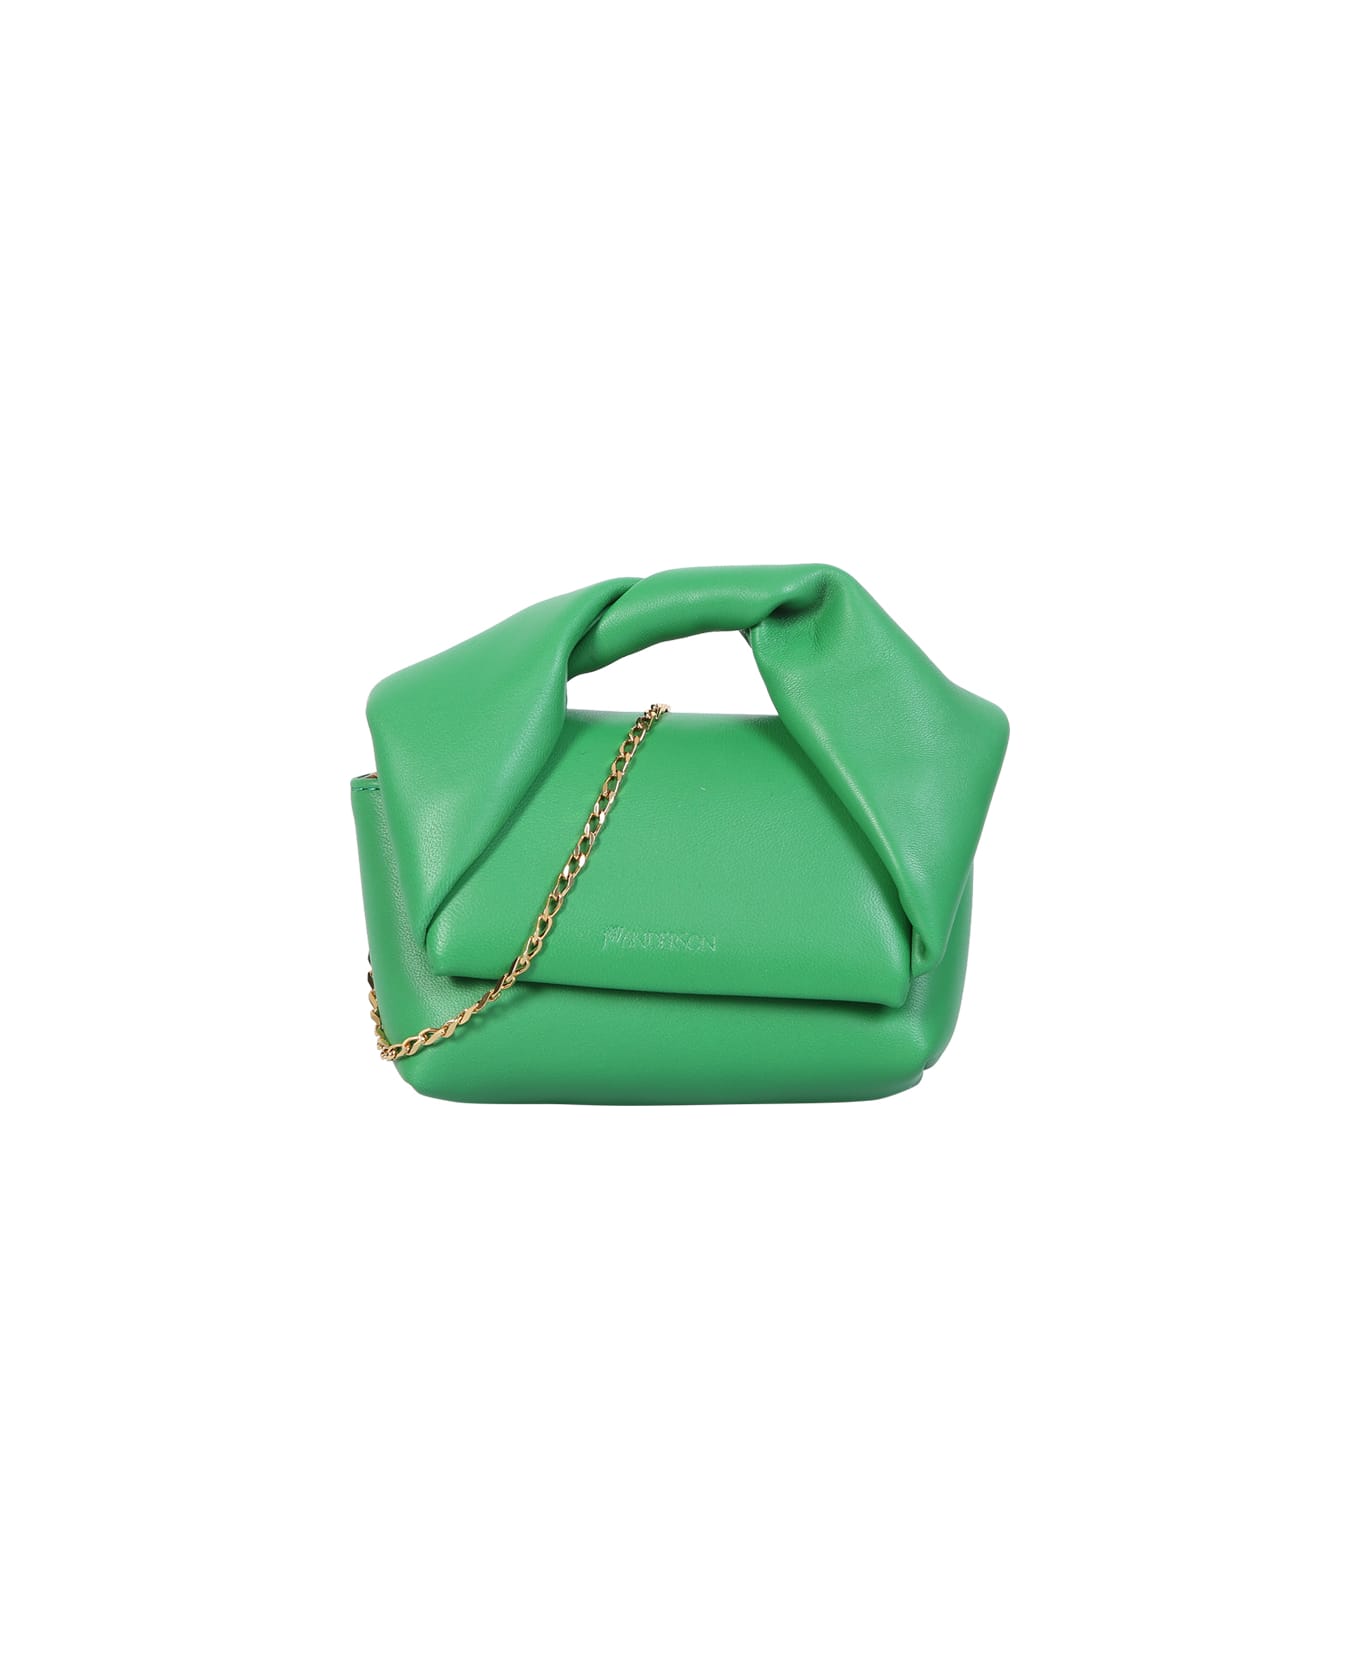 J.W. Anderson Mini Twister Green Bag - Green